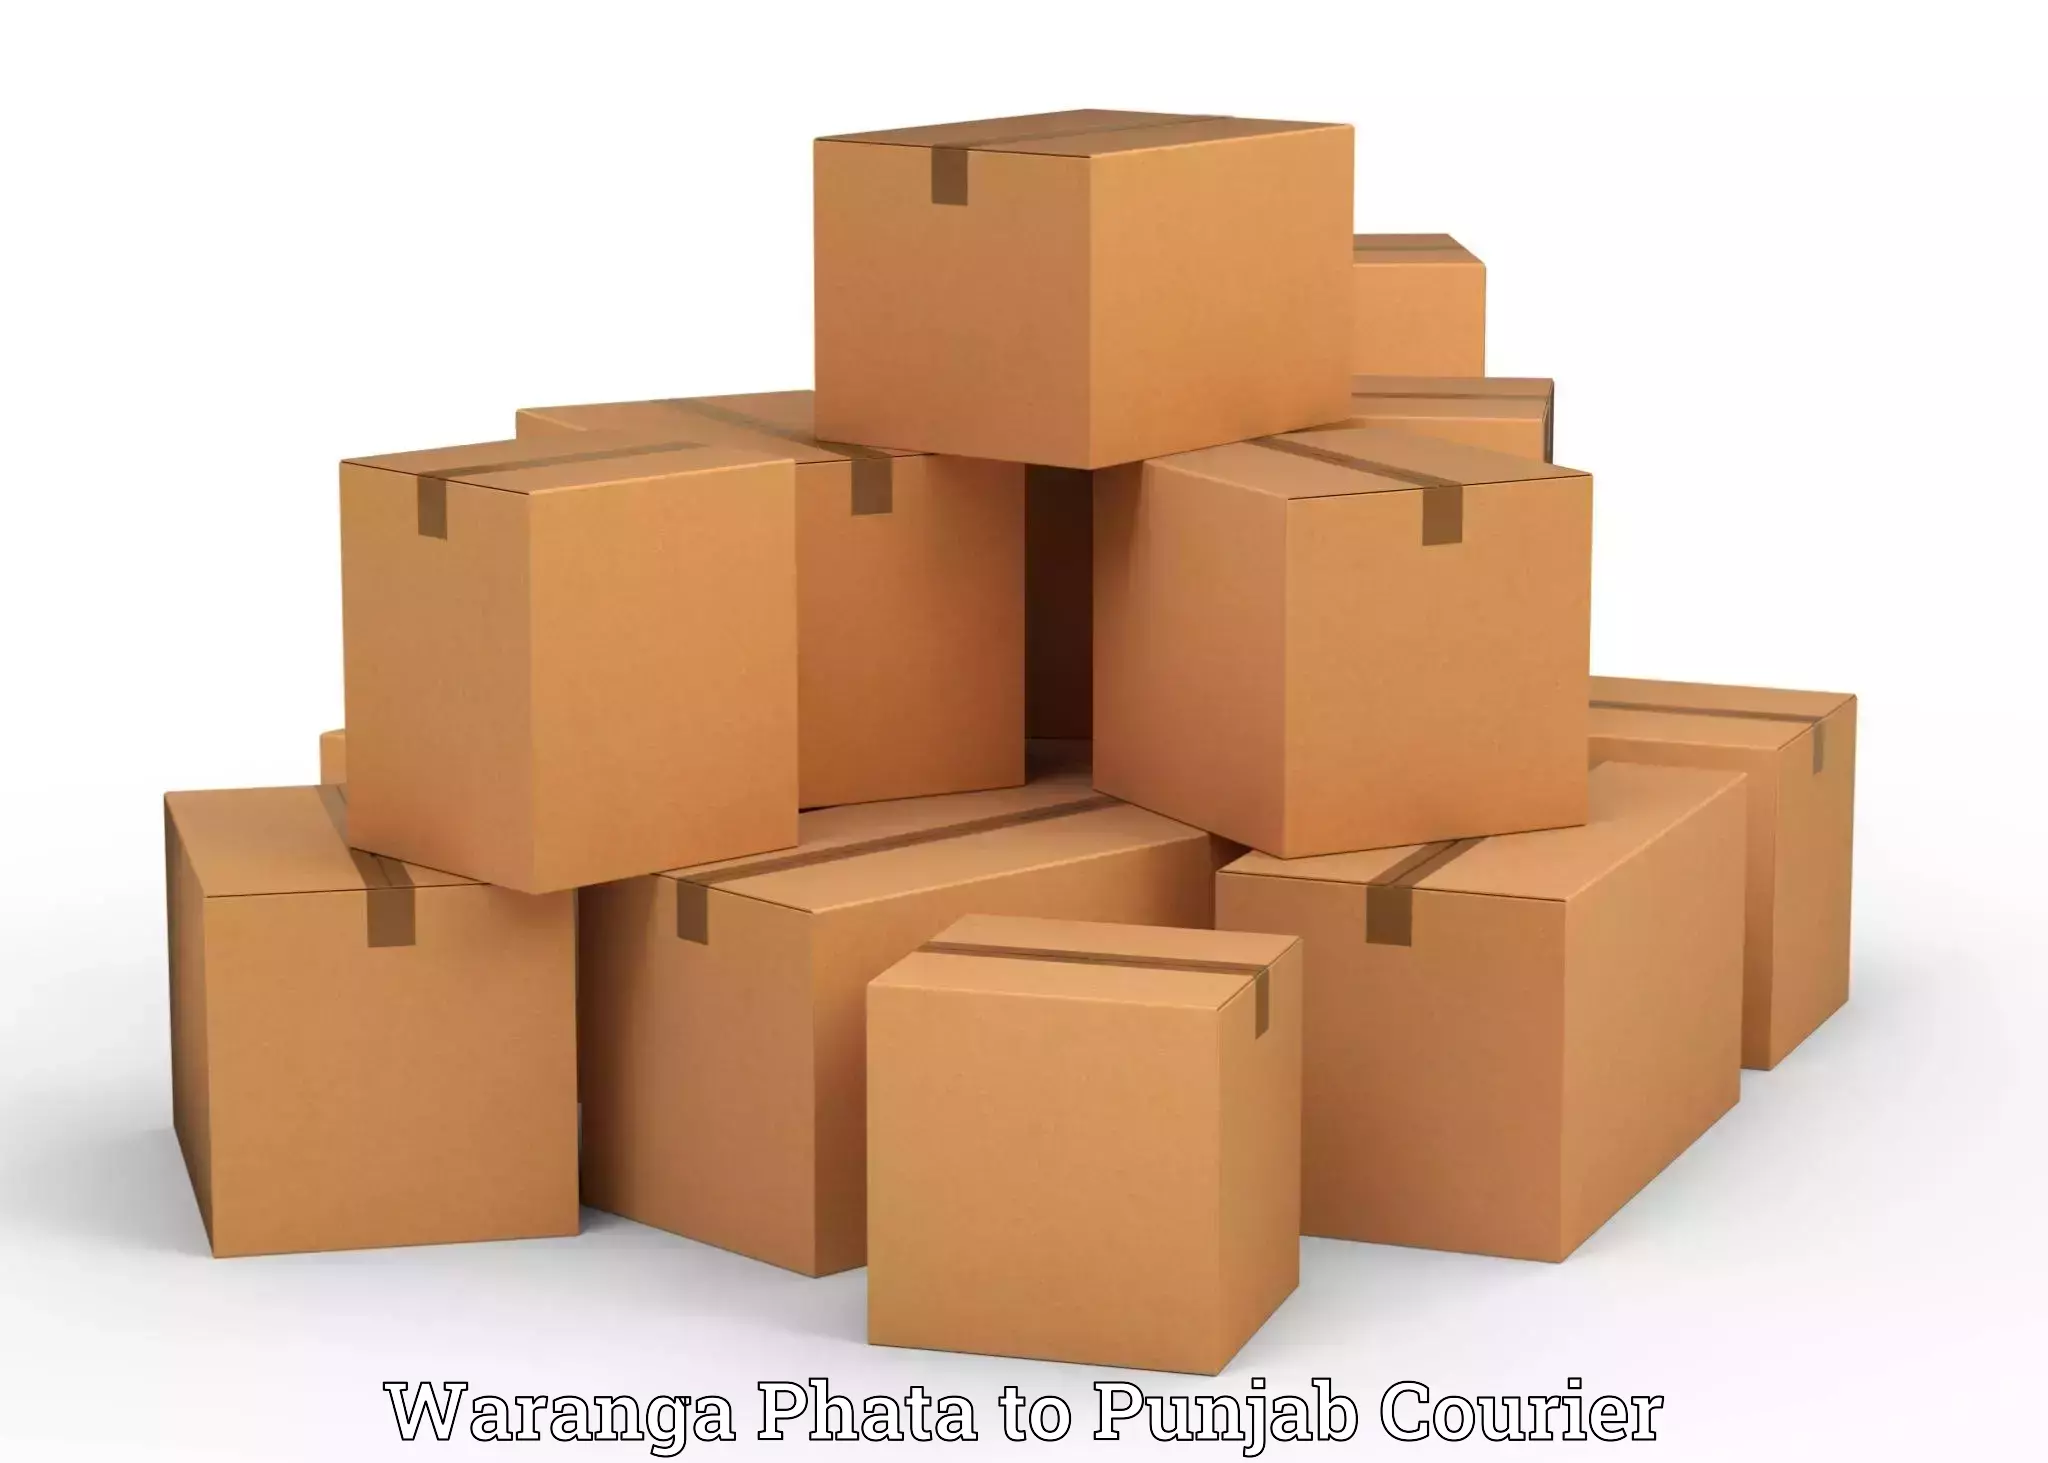 Baggage delivery planning Waranga Phata to Punjab